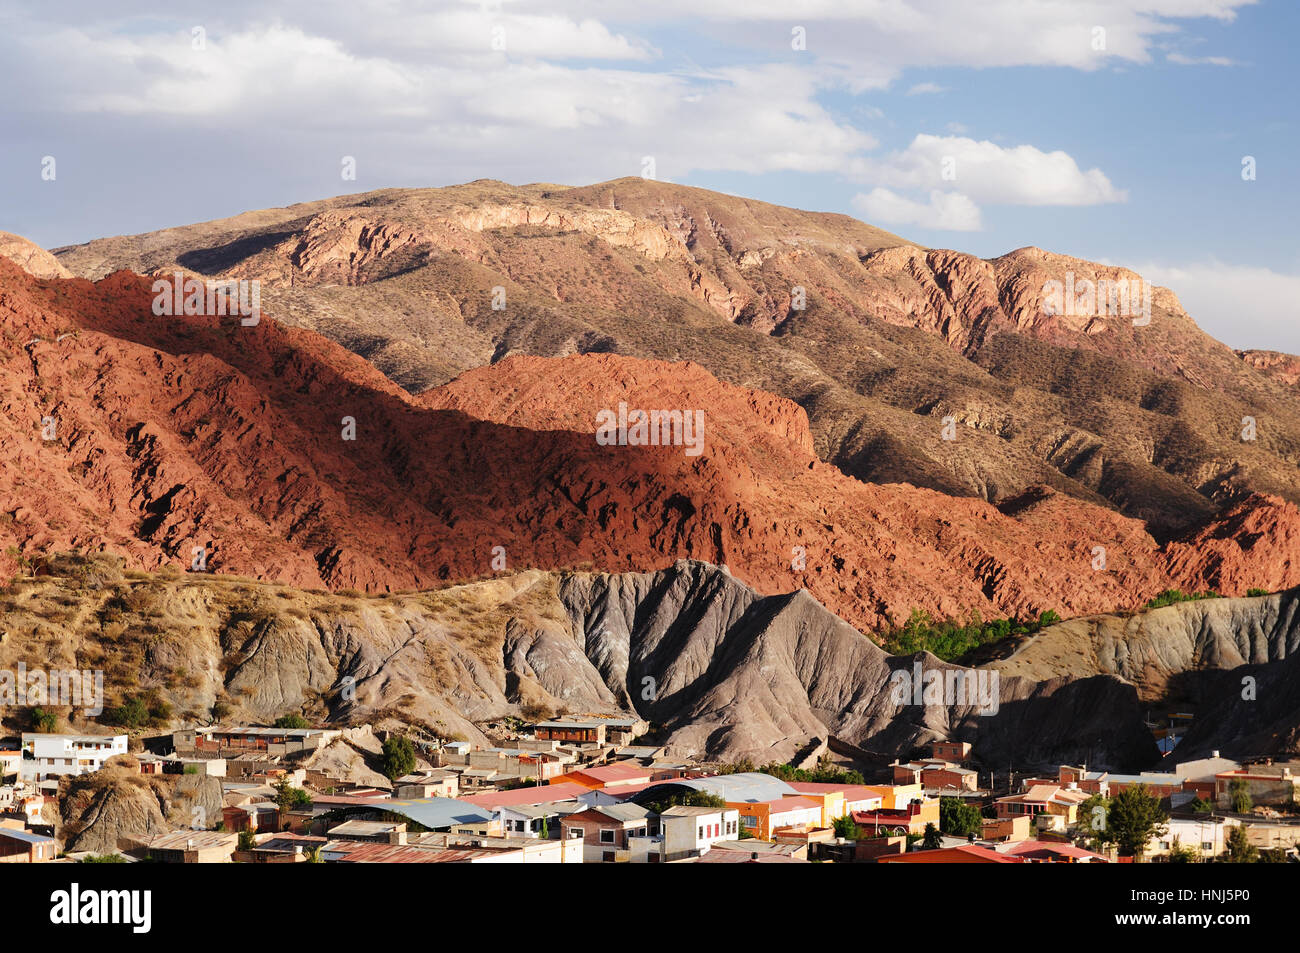 Tupiza - la ciudad más bonita vista en Bolivia. El paisaje está lleno de rocas de colores, cerros, montañas y valles. La imagen en la vista actual Foto de stock